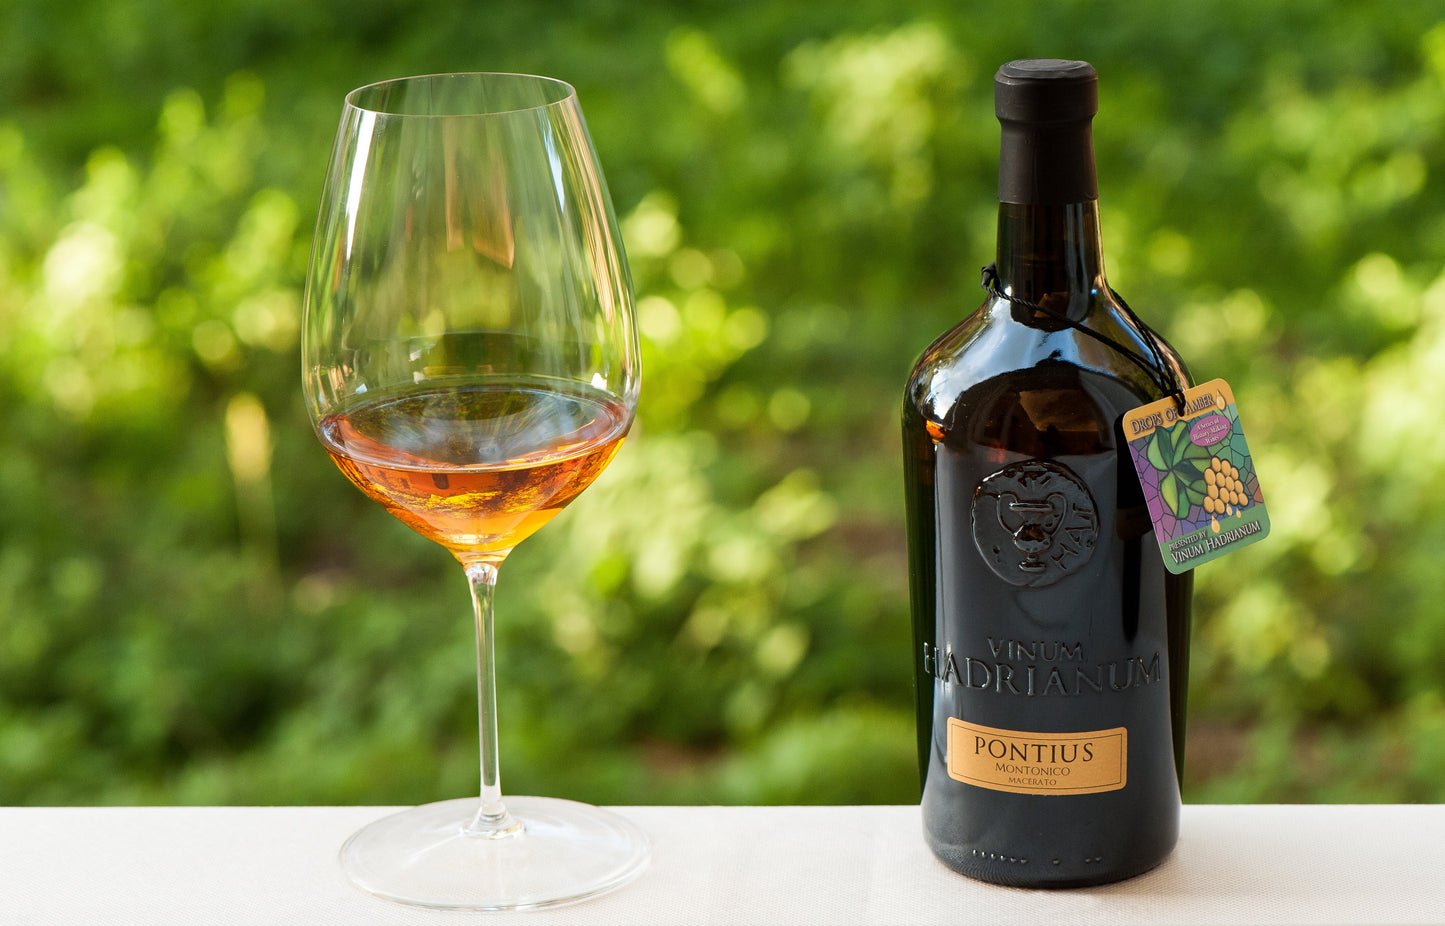 PONTIUS Montonico Superiore DOC Dry White Wine | Vinum Hadrianum